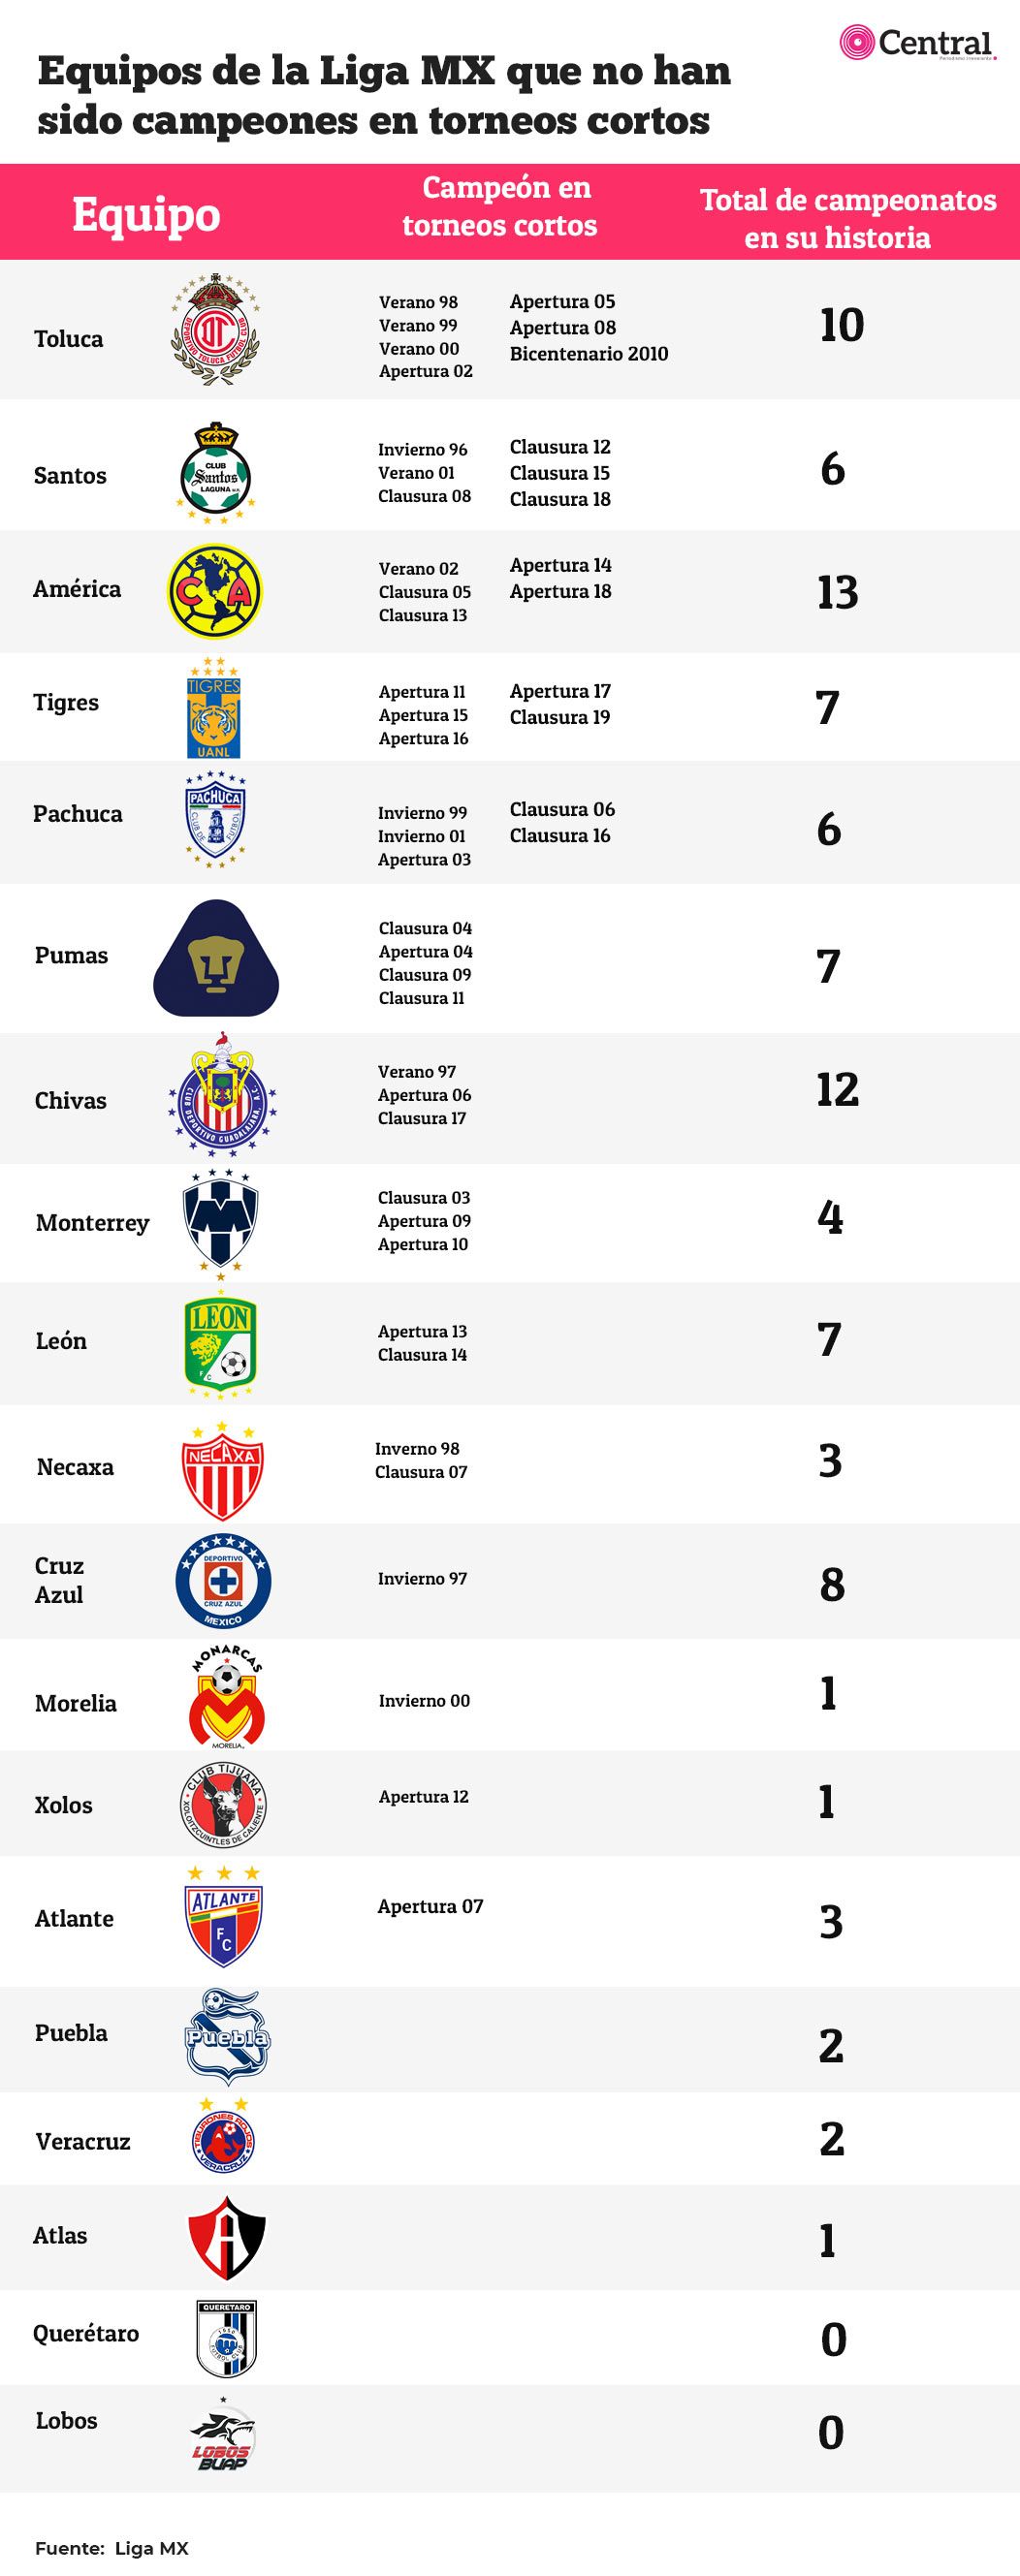 ¿Qué equipos del fútbol mexicano no han sido campeones